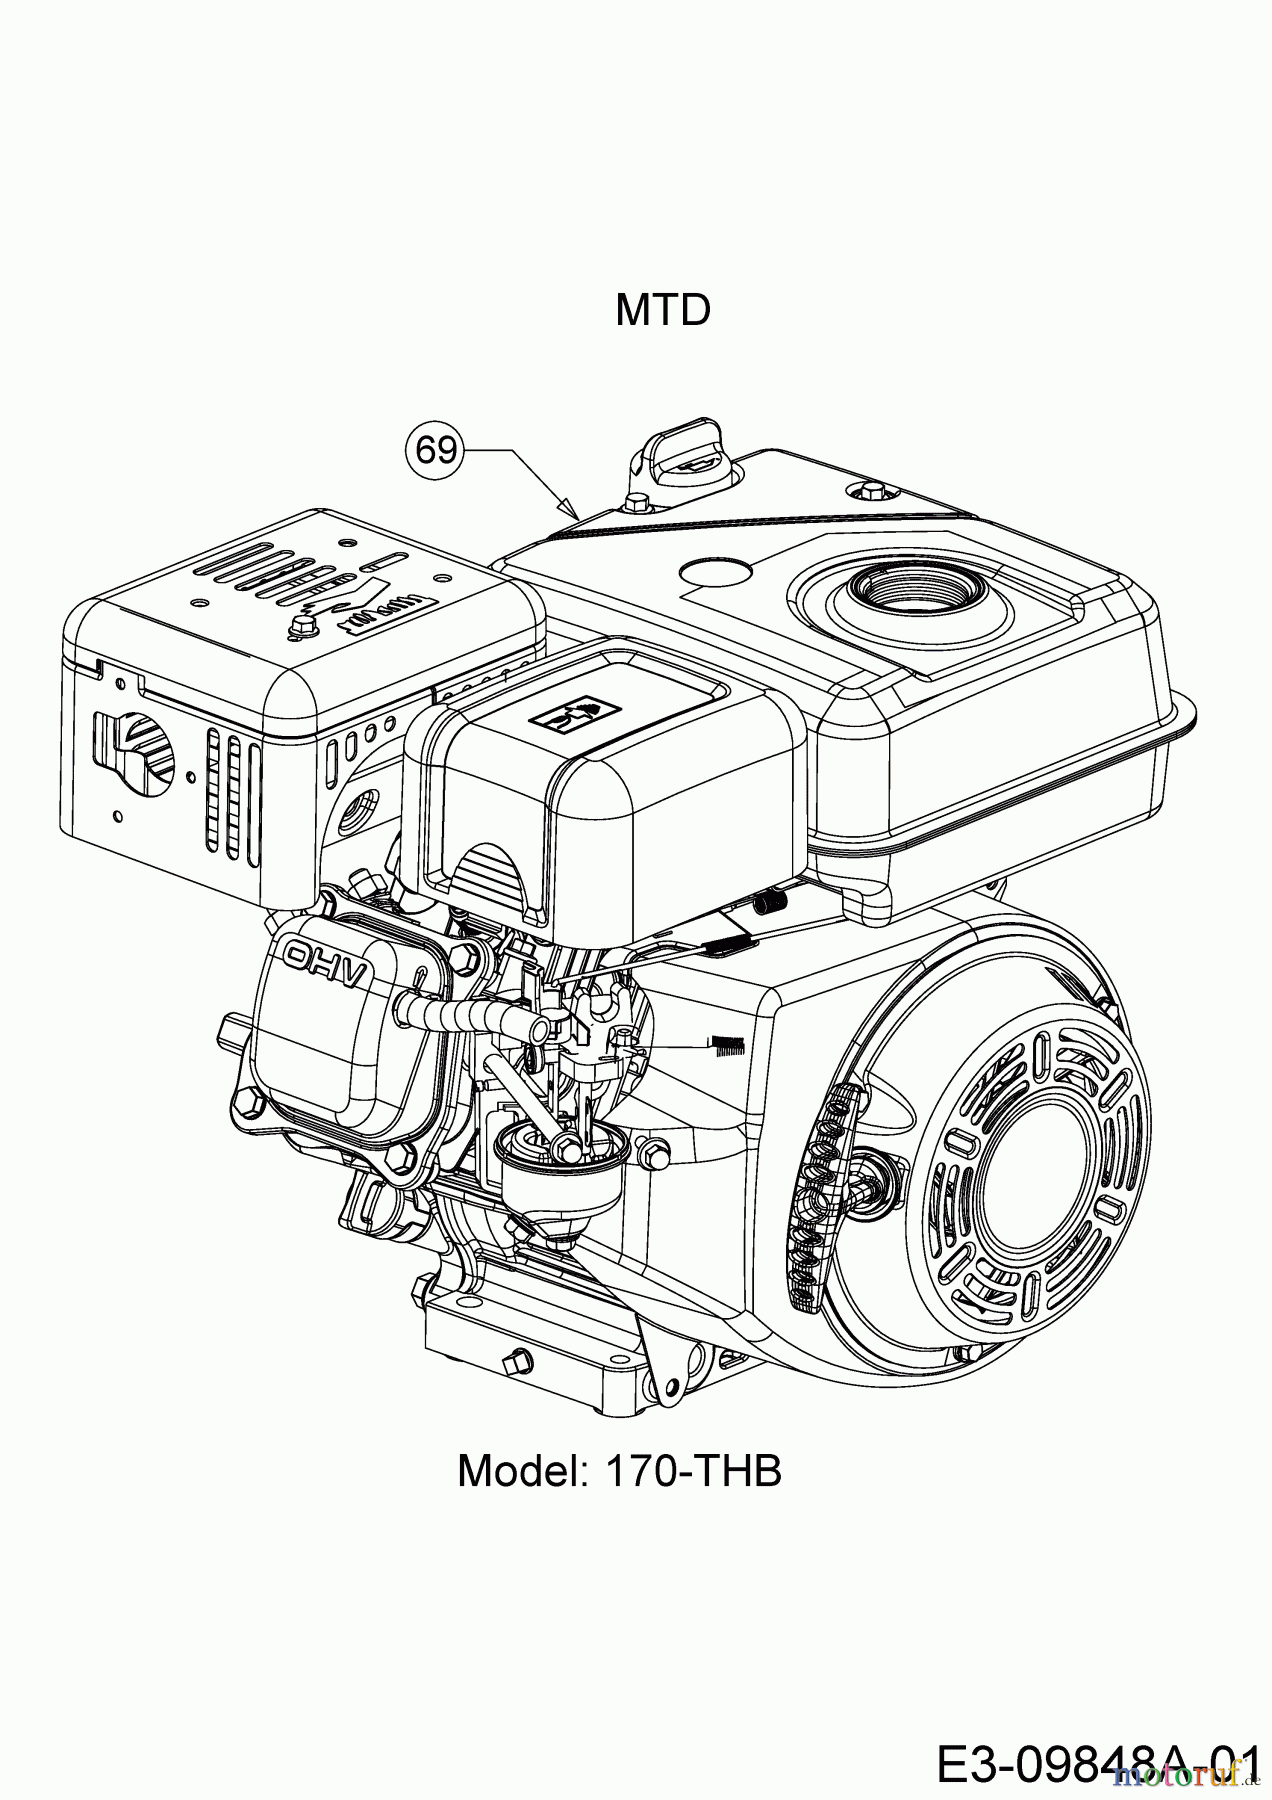  MTD Tillers T/405 M 21AA46M3678  (2020) Engine MTD